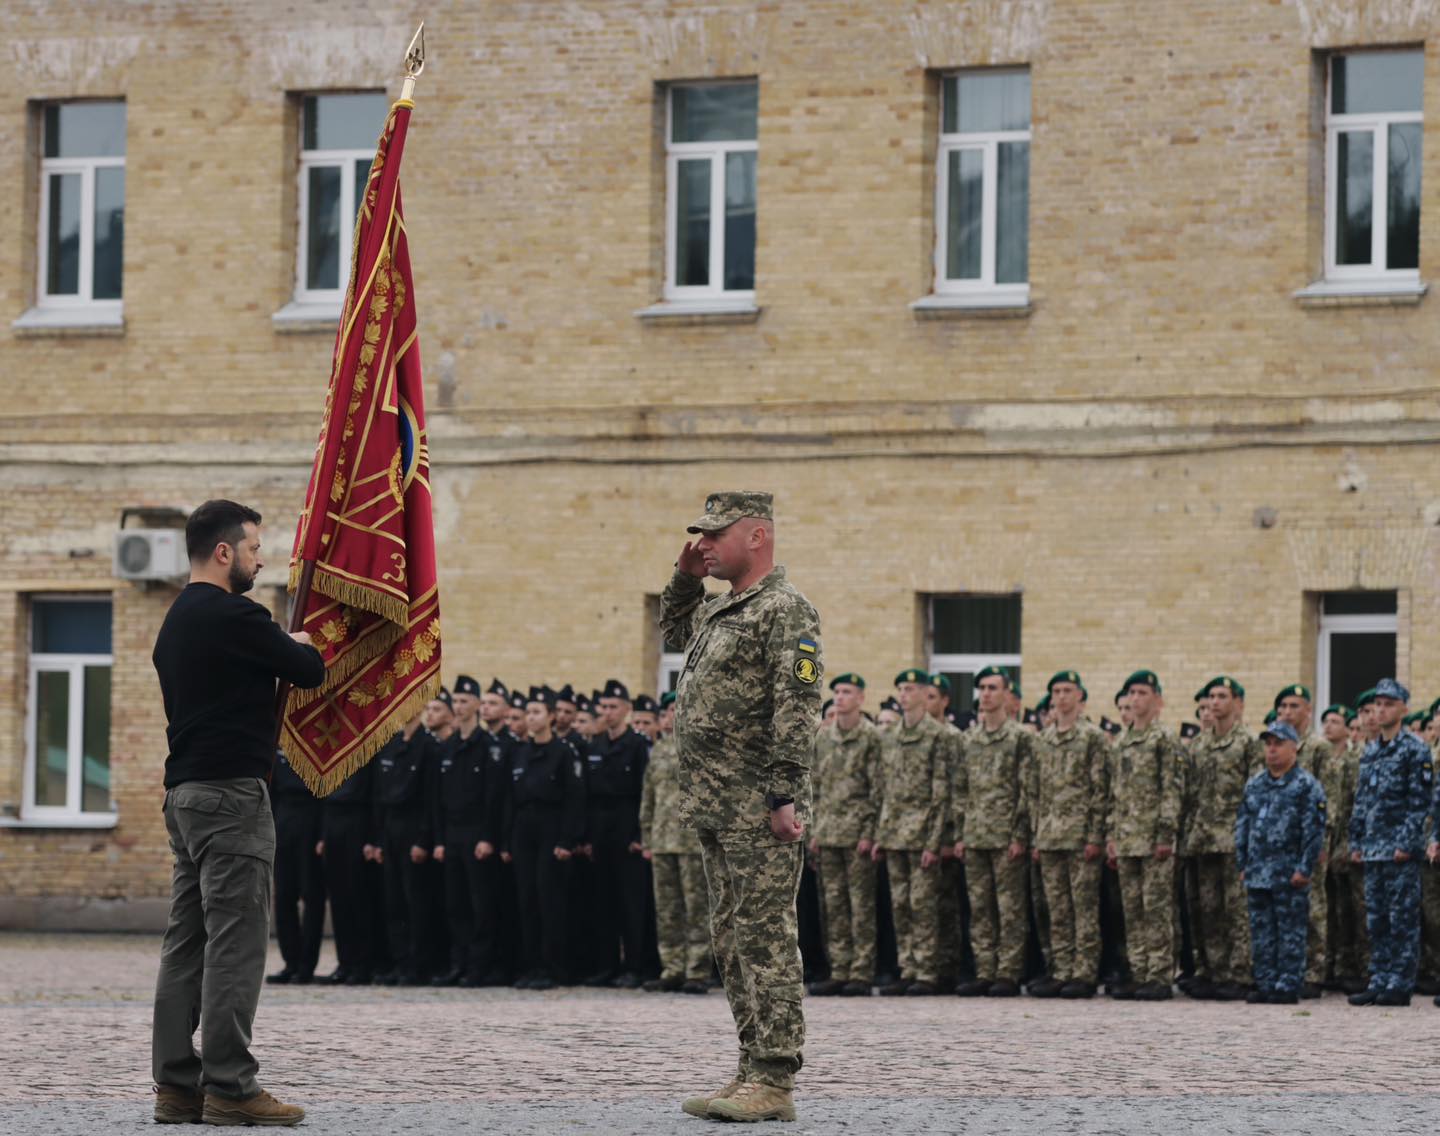 47 отдельная механизированная бригада “Маґура” получила Боевое знамя и награды от президента